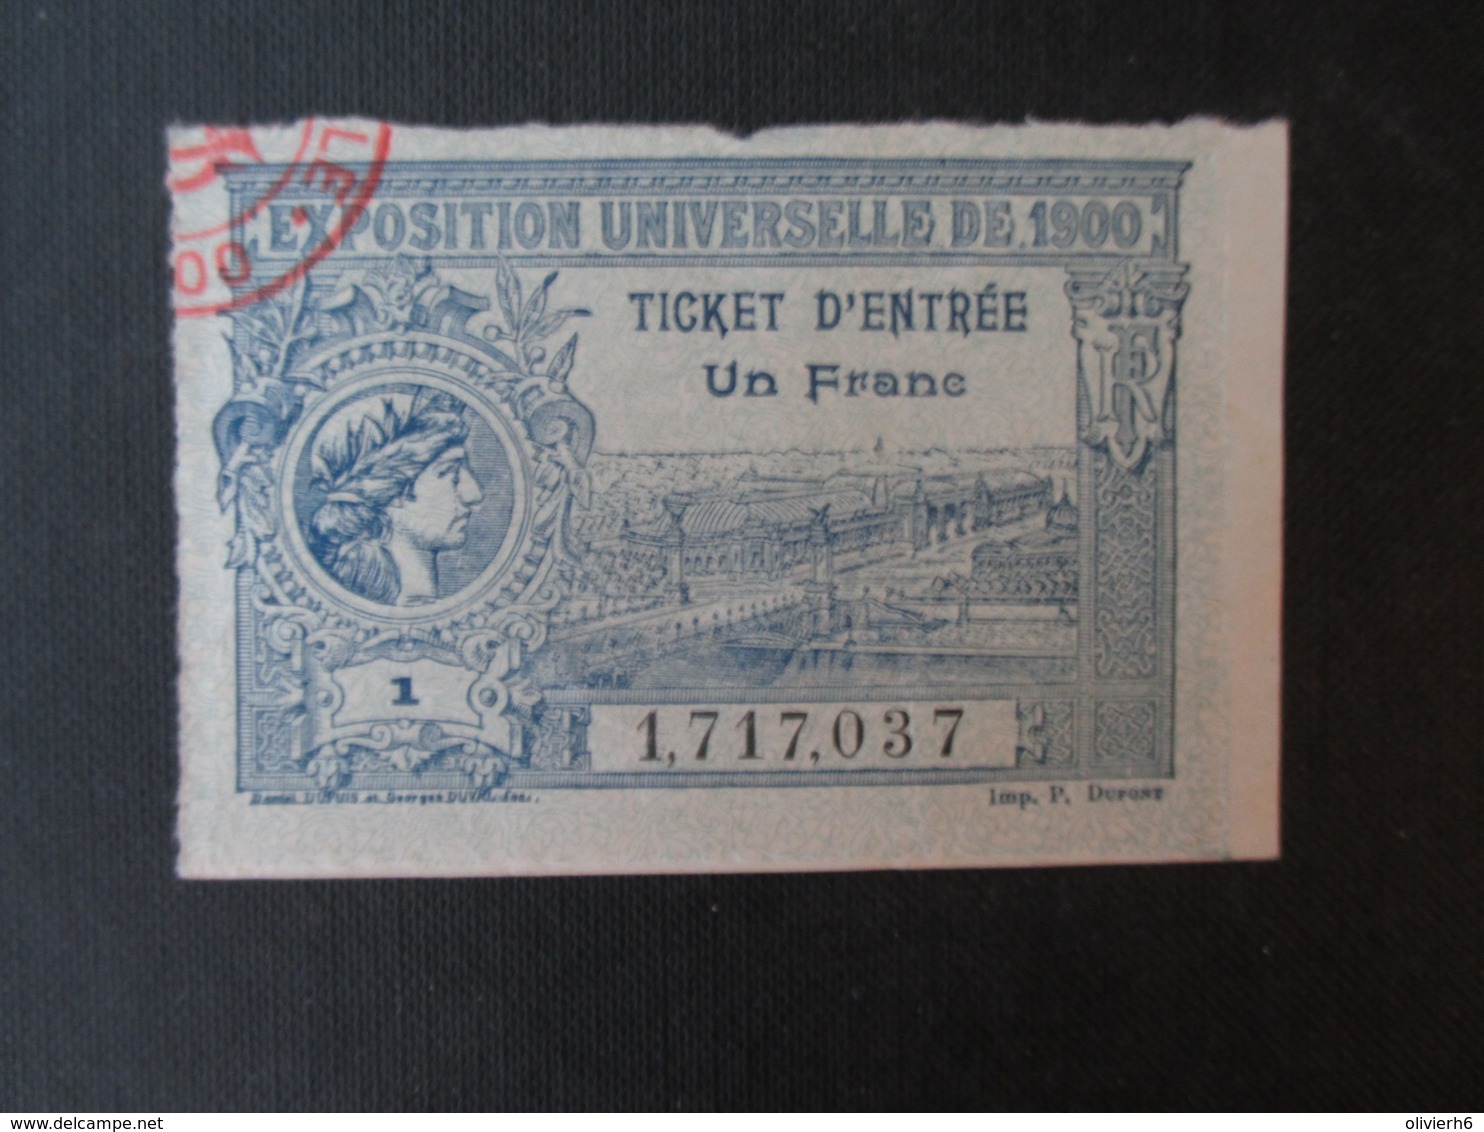 VP EXPOSITION UNIVERSELLE PARIS 1900 (V1906) TICKET D'ENTRéE UN FRANC (2 Vues) 1 - 1,717,037 - Tickets D'entrée